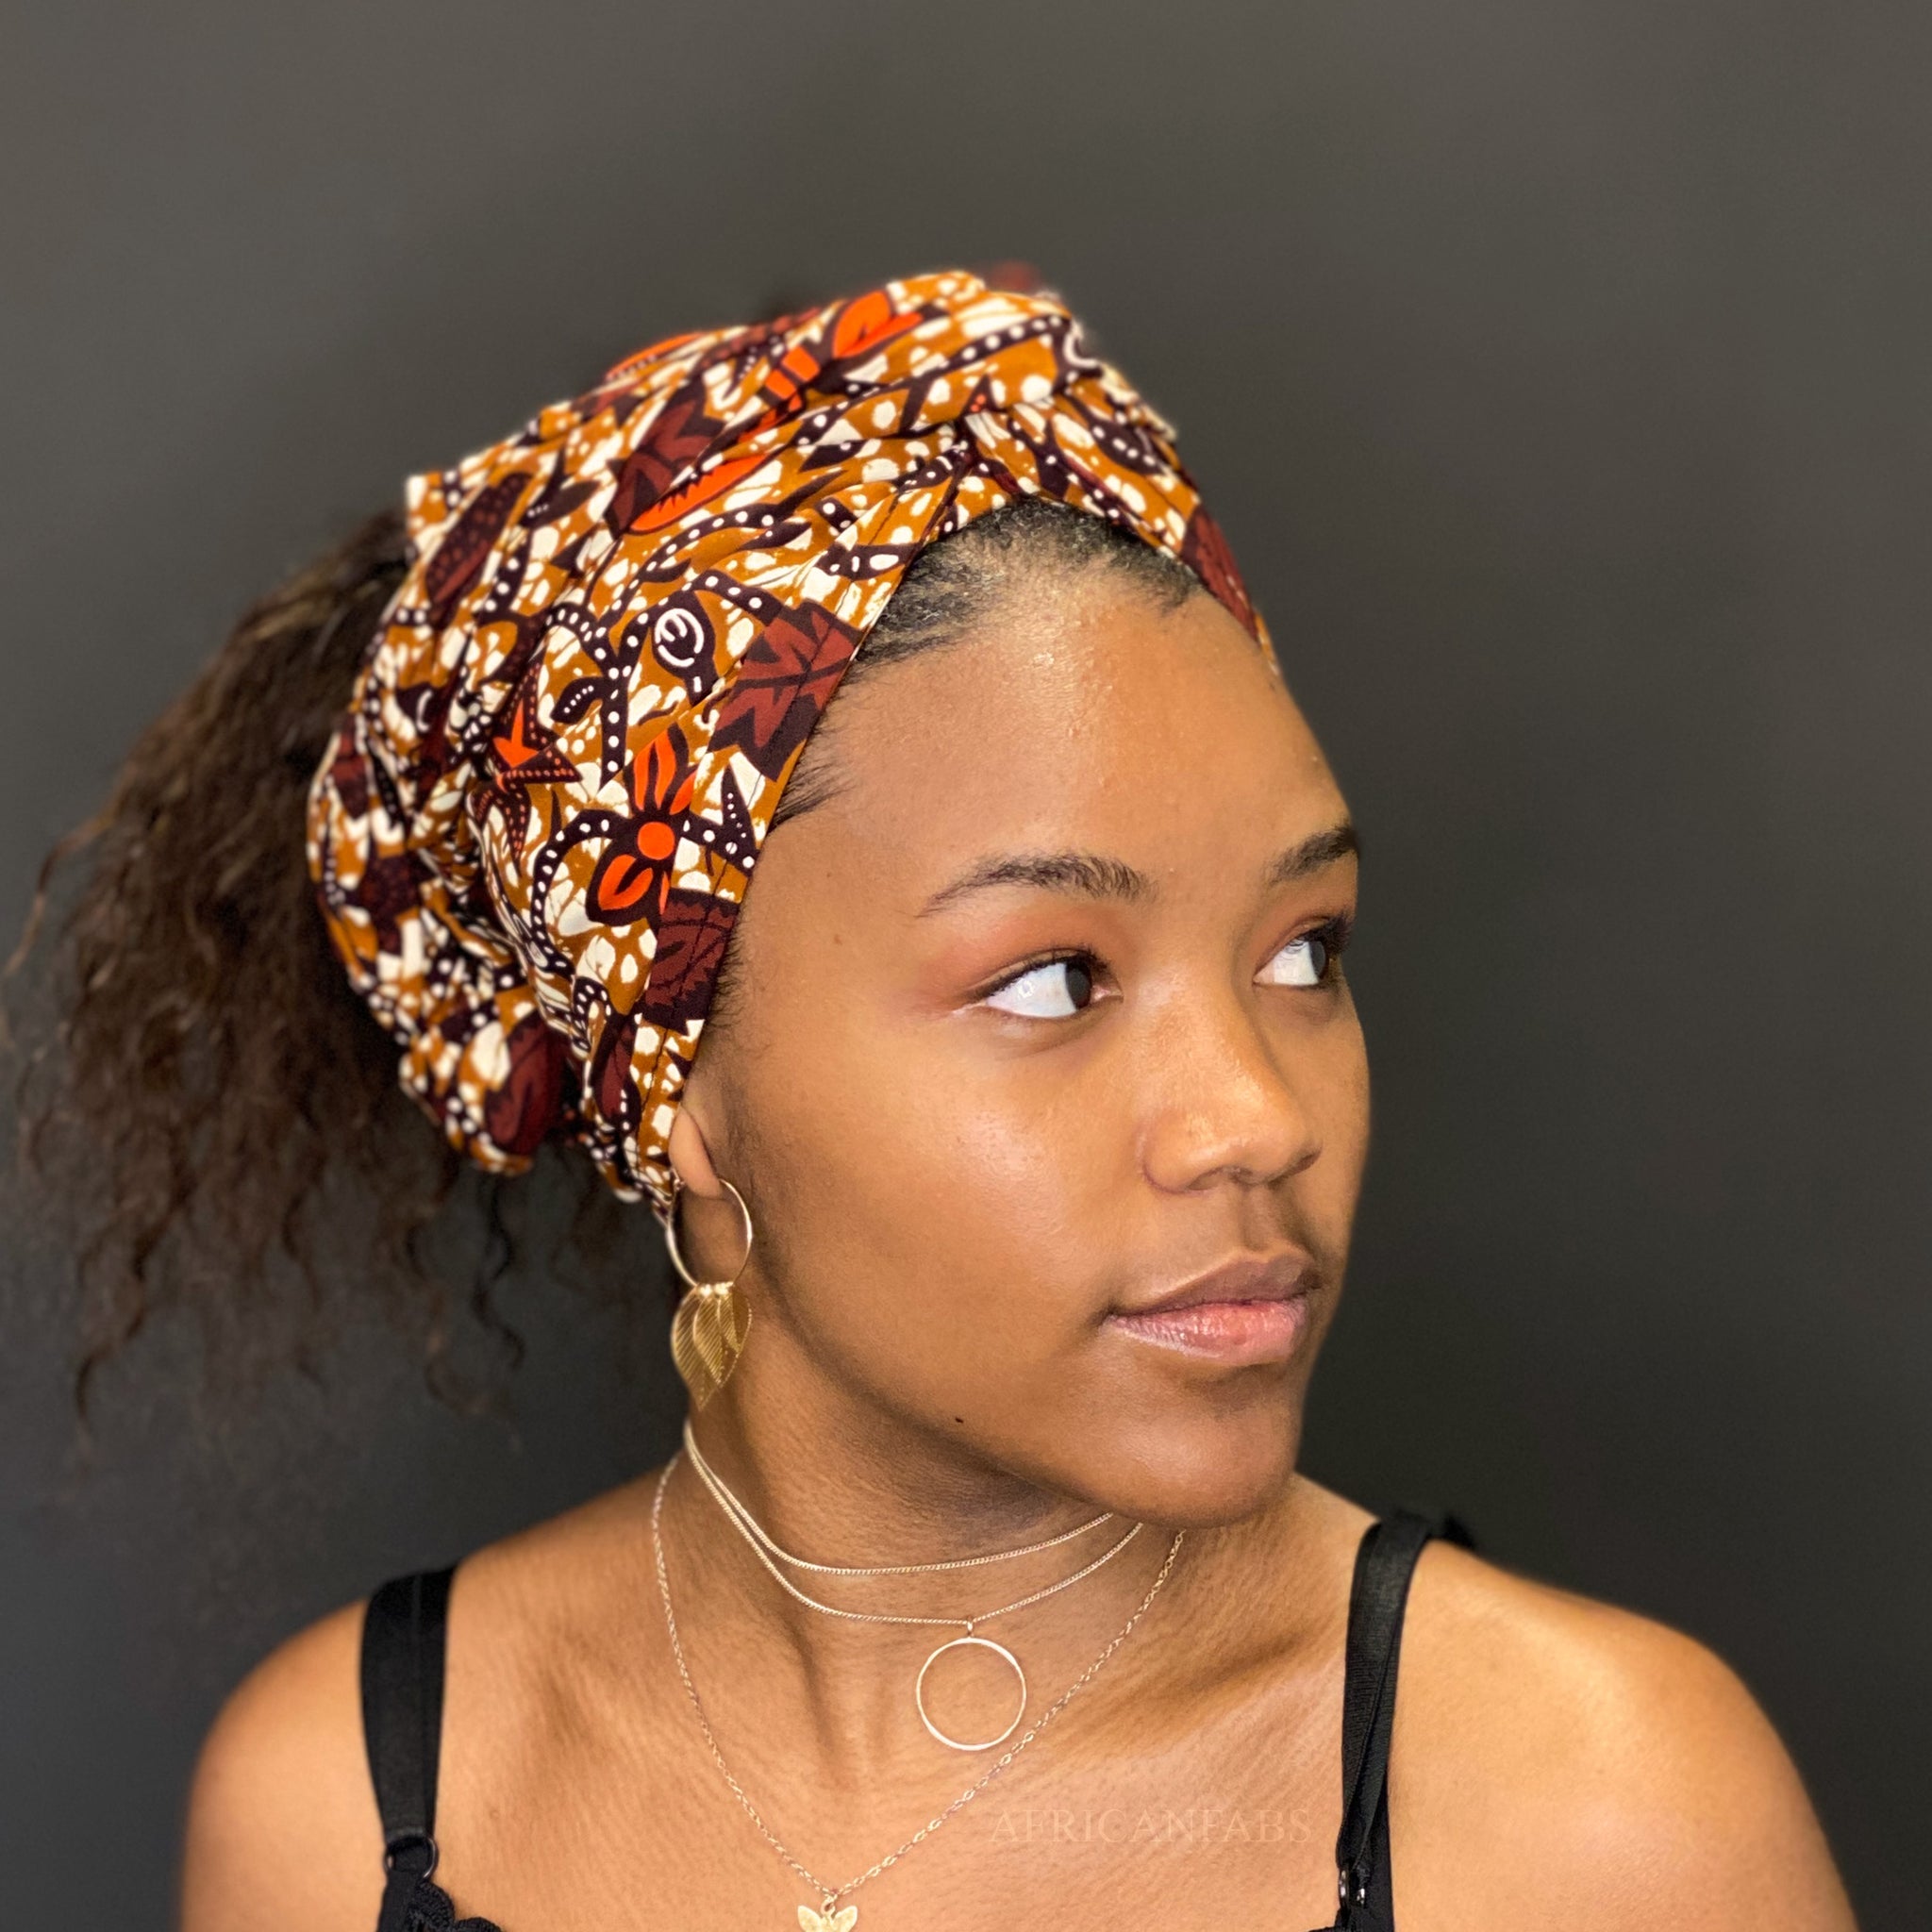 Afrikaanse hoofddoek / headwrap - Bruin / oranje leaves